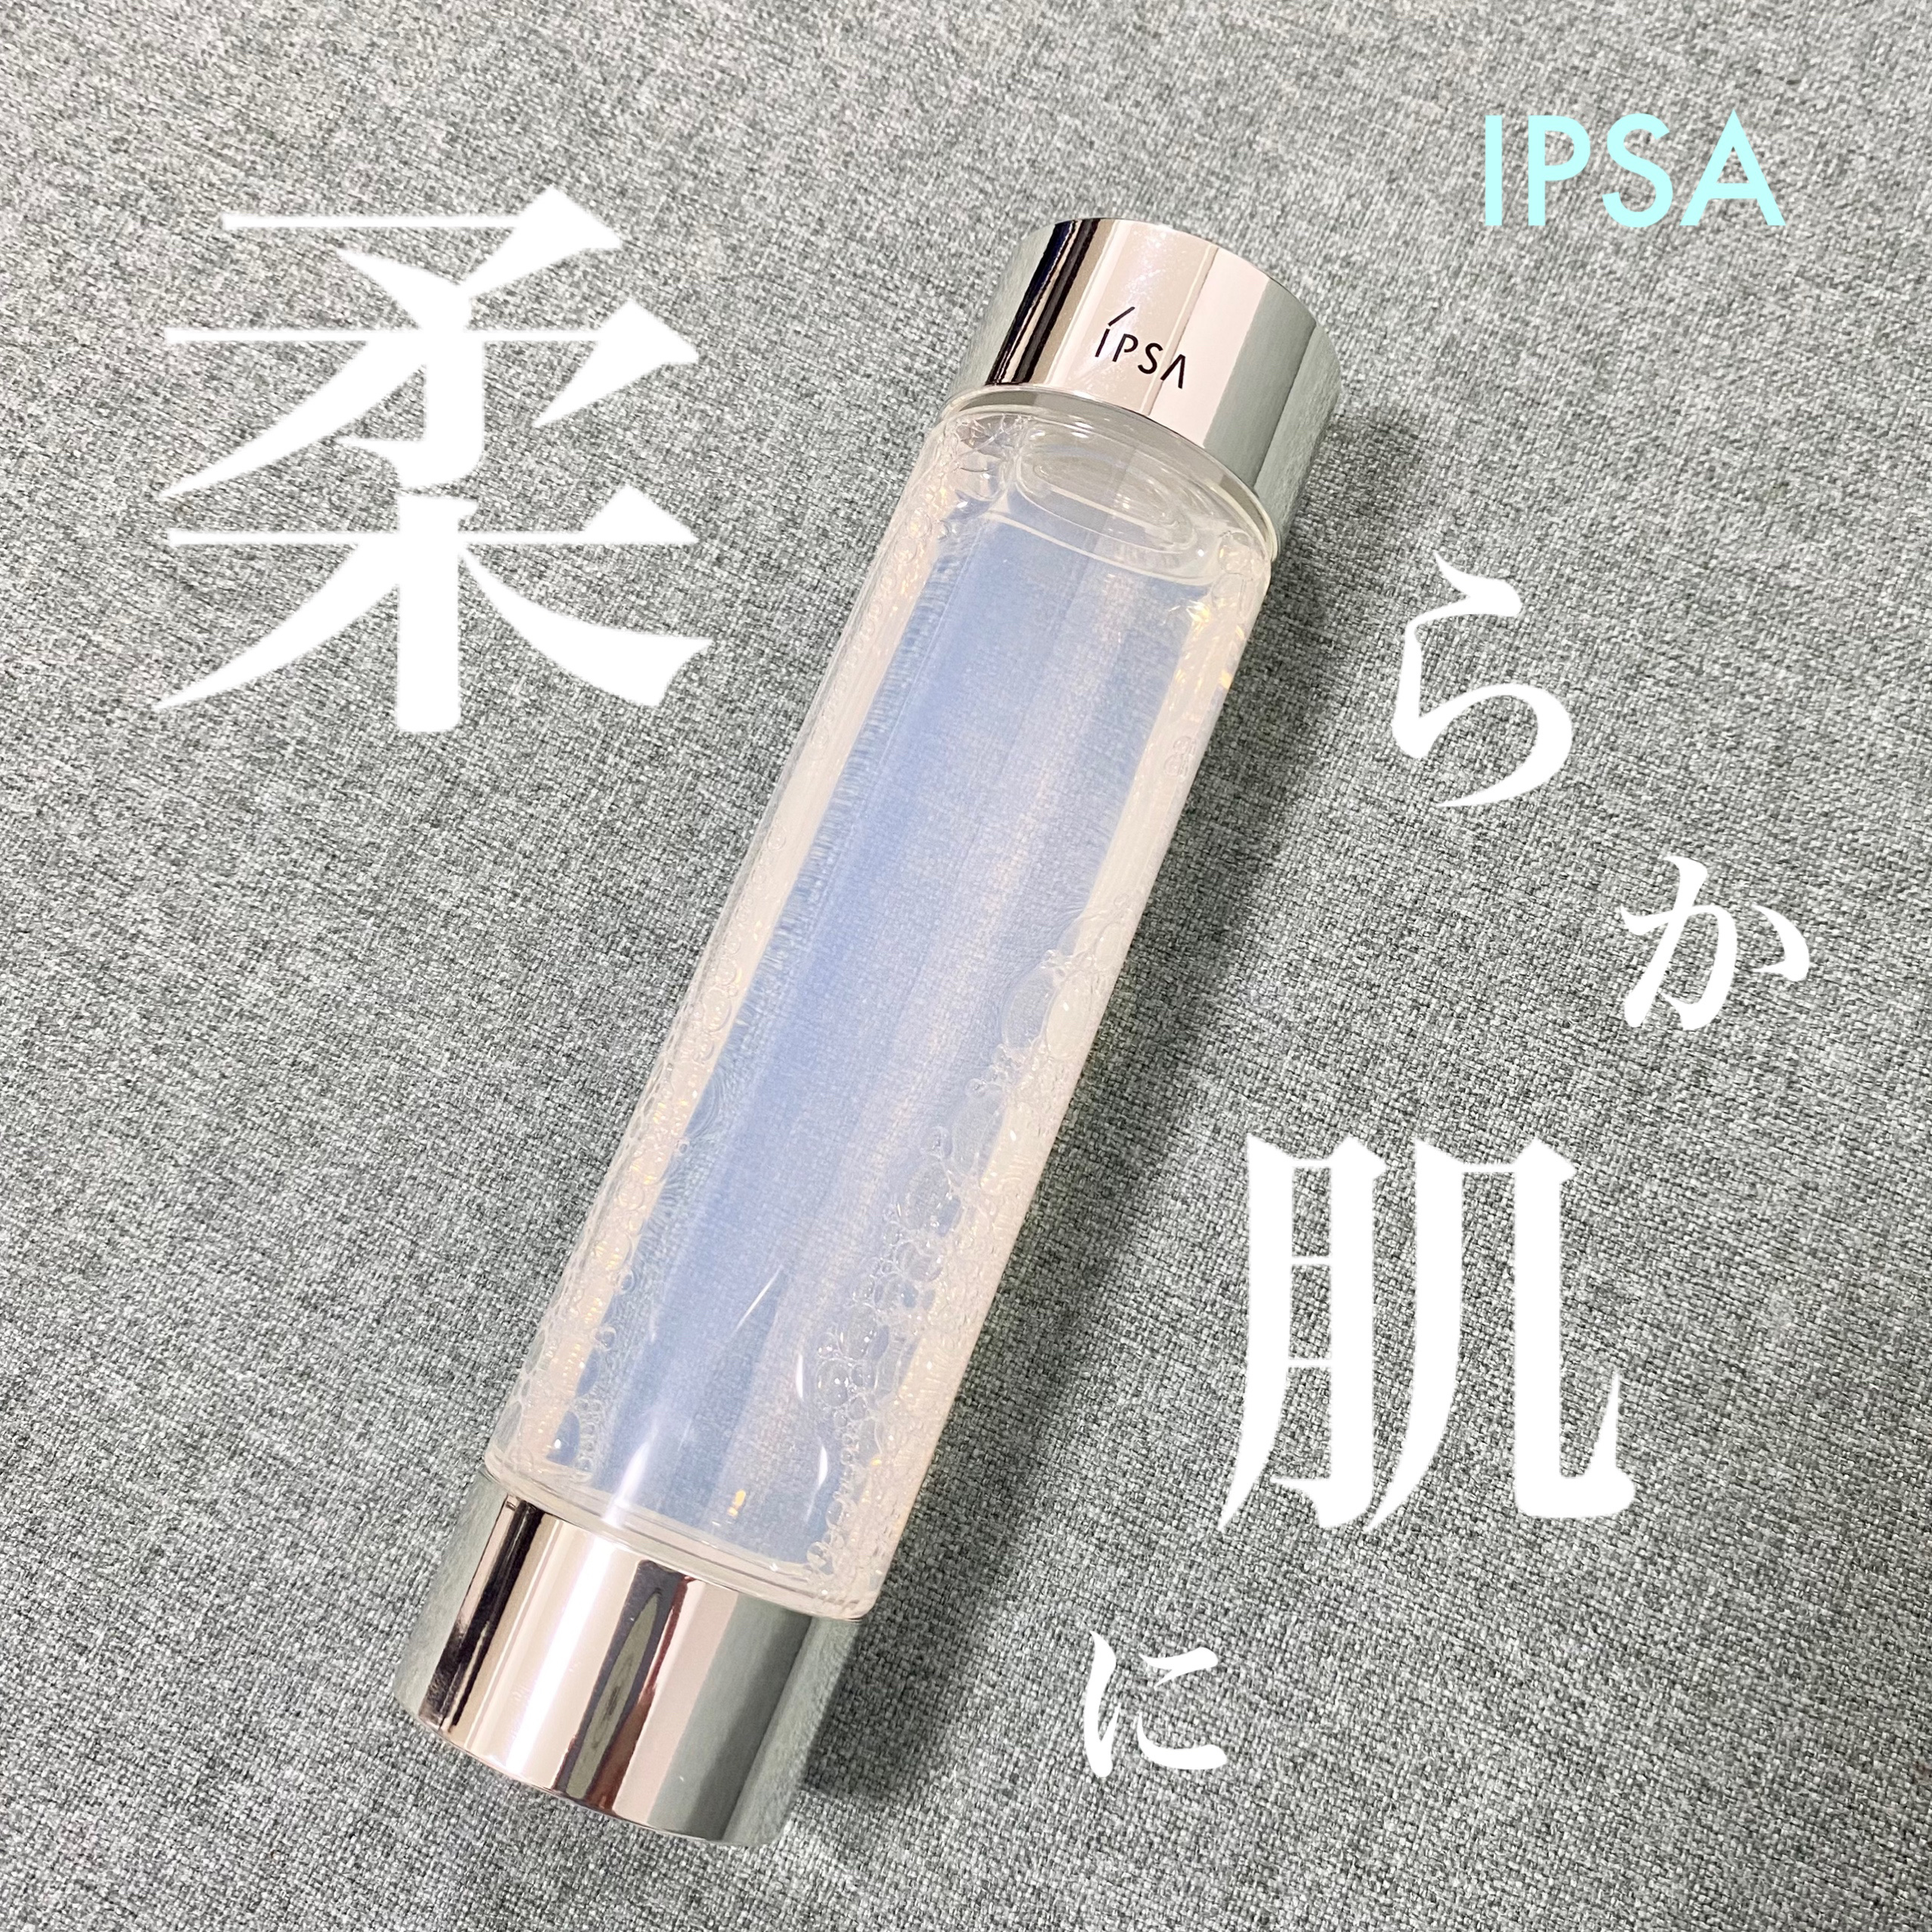 ☆新品☆イプサ IPSA リファイニングローション 化粧水 - 化粧水